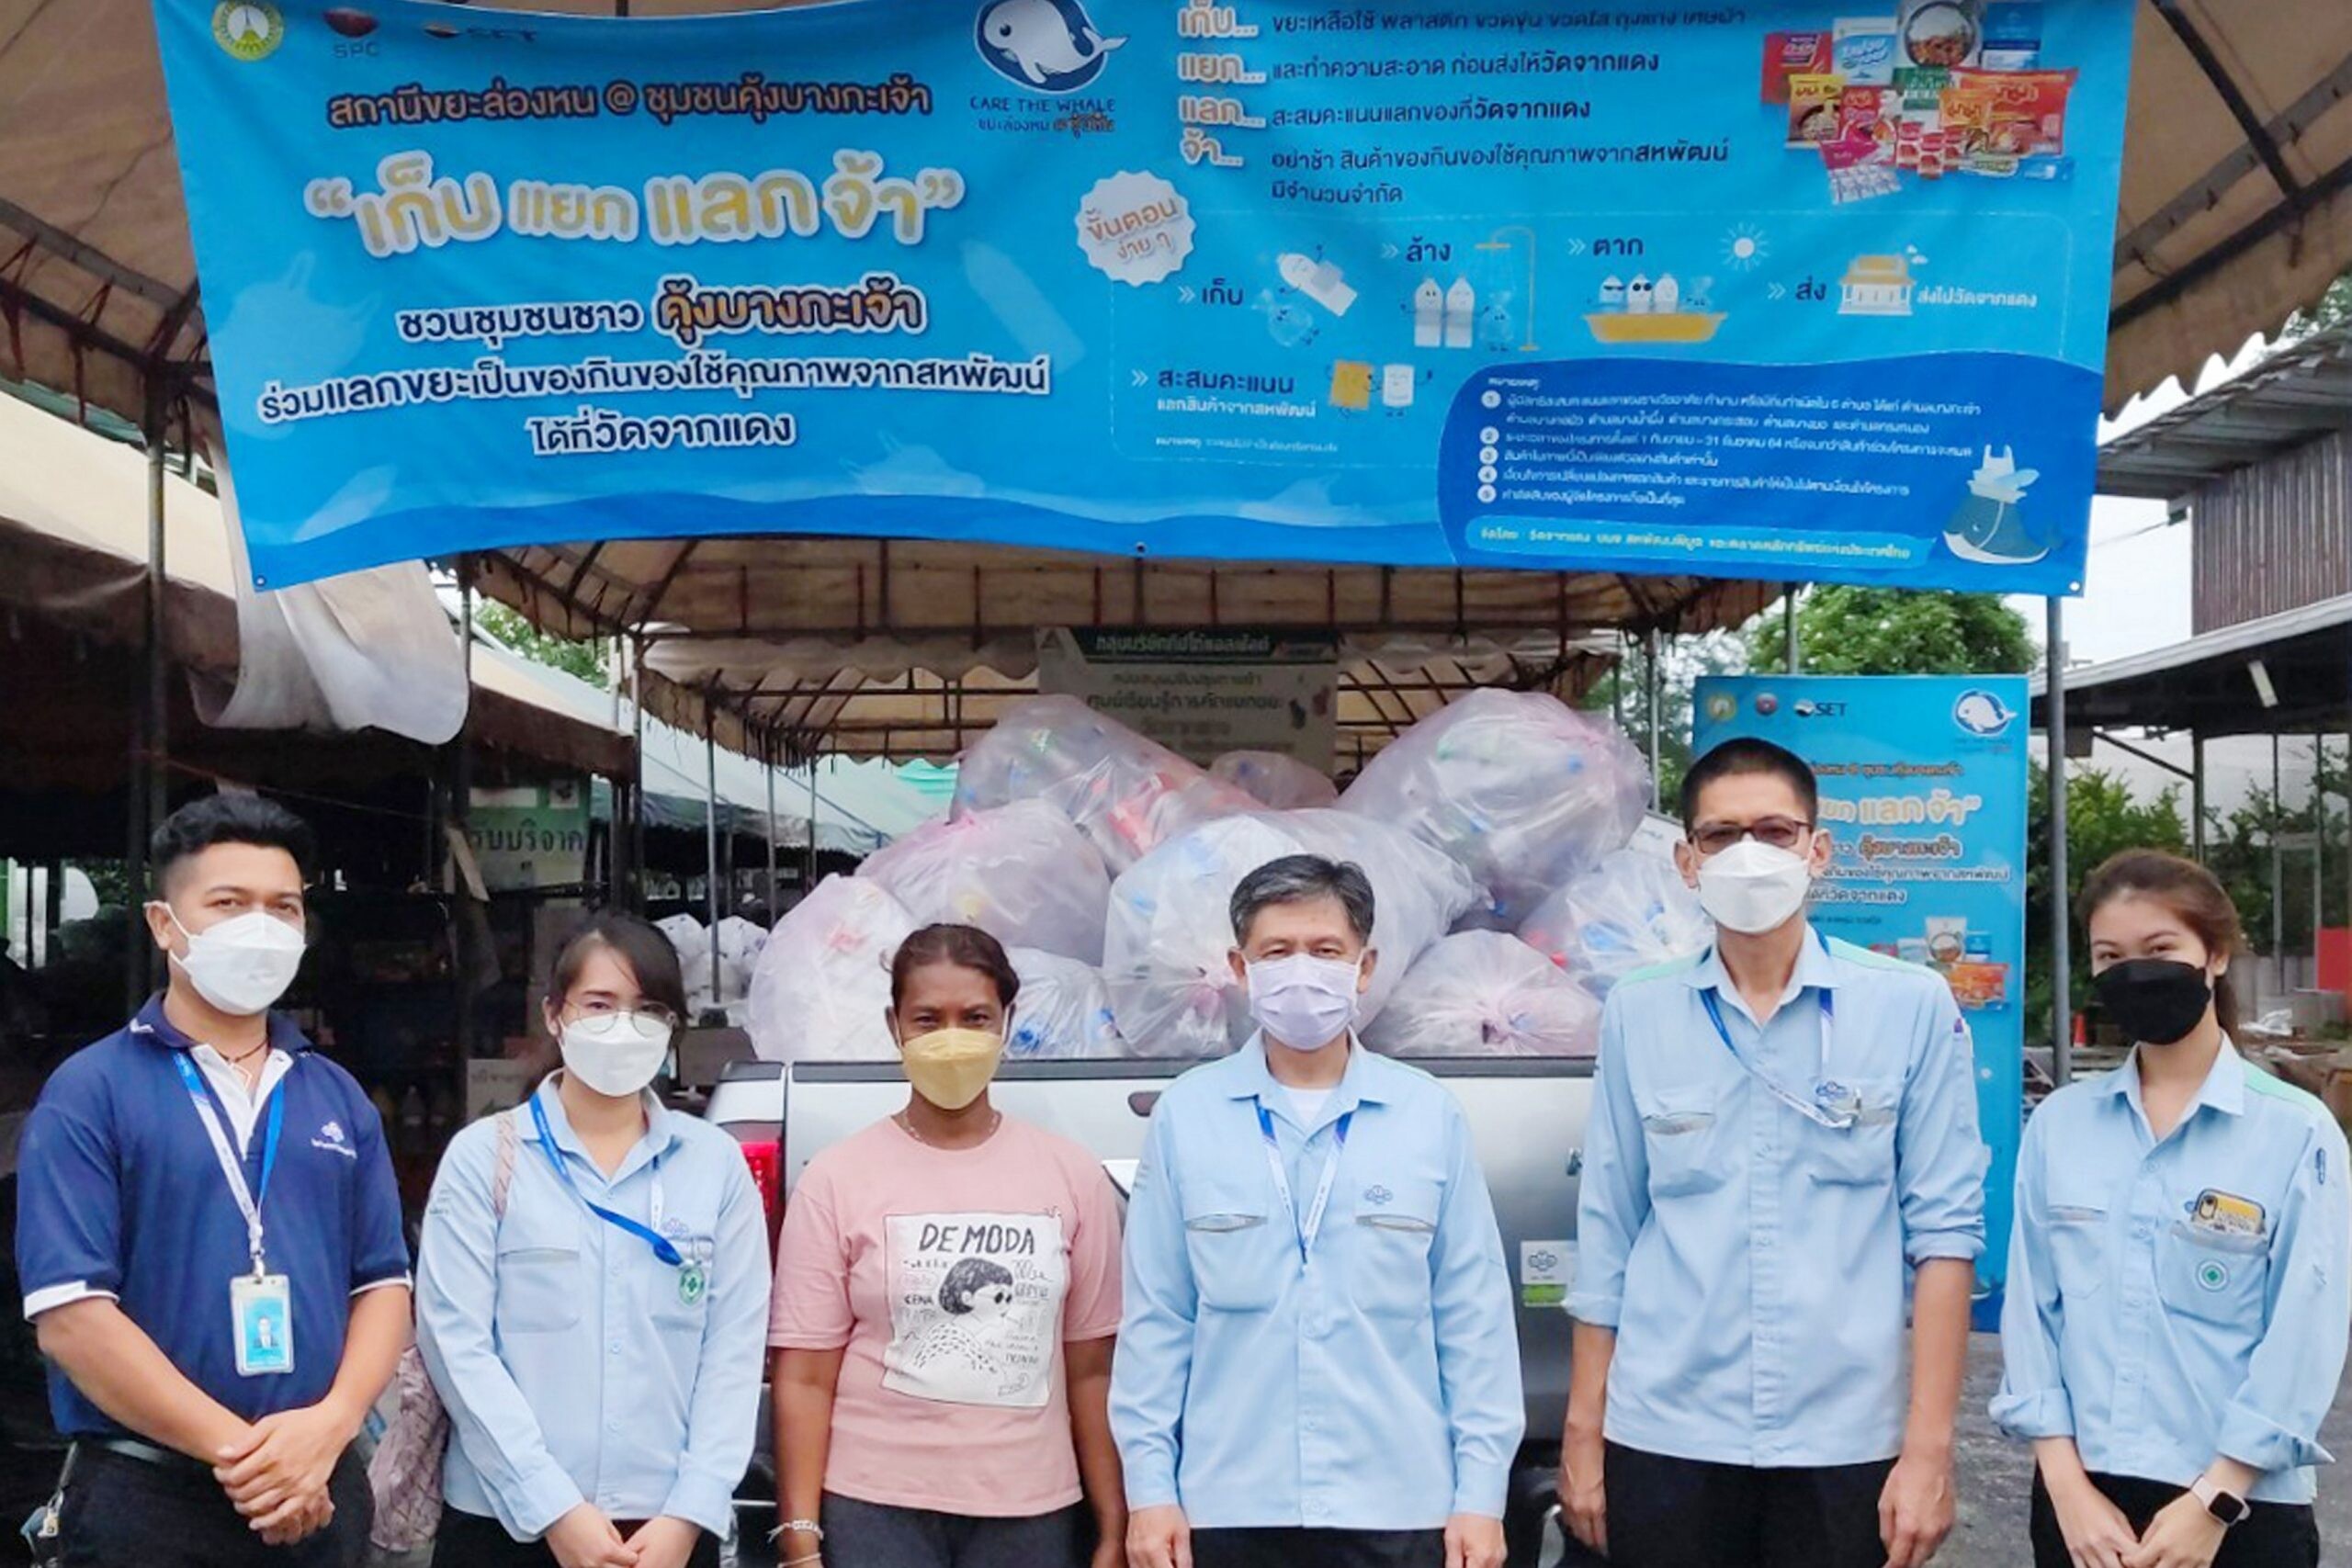 บริษัทไทยเซ็นทรัลเคมีฯ ร่วมกับวัดจากแดงบริจาคขวดพลาสติก เพื่อทำชุดป้องกันไวรัส (PPE) สำหรับพระสงฆ์ใช้ปฏิบัติศาสนกิจ ในช่วงสถานการณ์โควิด 19